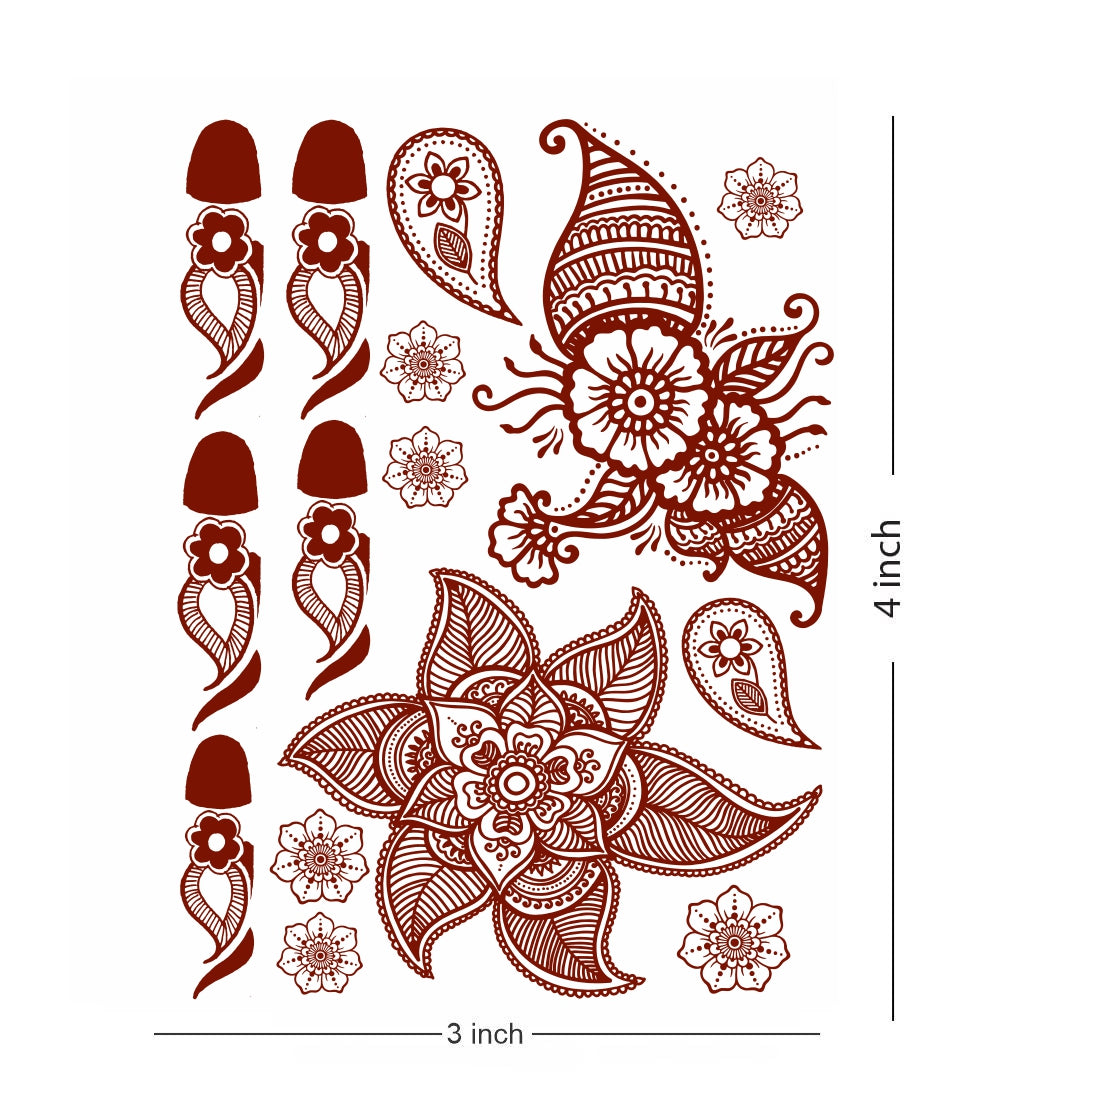 Full Hand Mehndi Flower Design Tattoo Waterproof For Women Temporary Tattoo